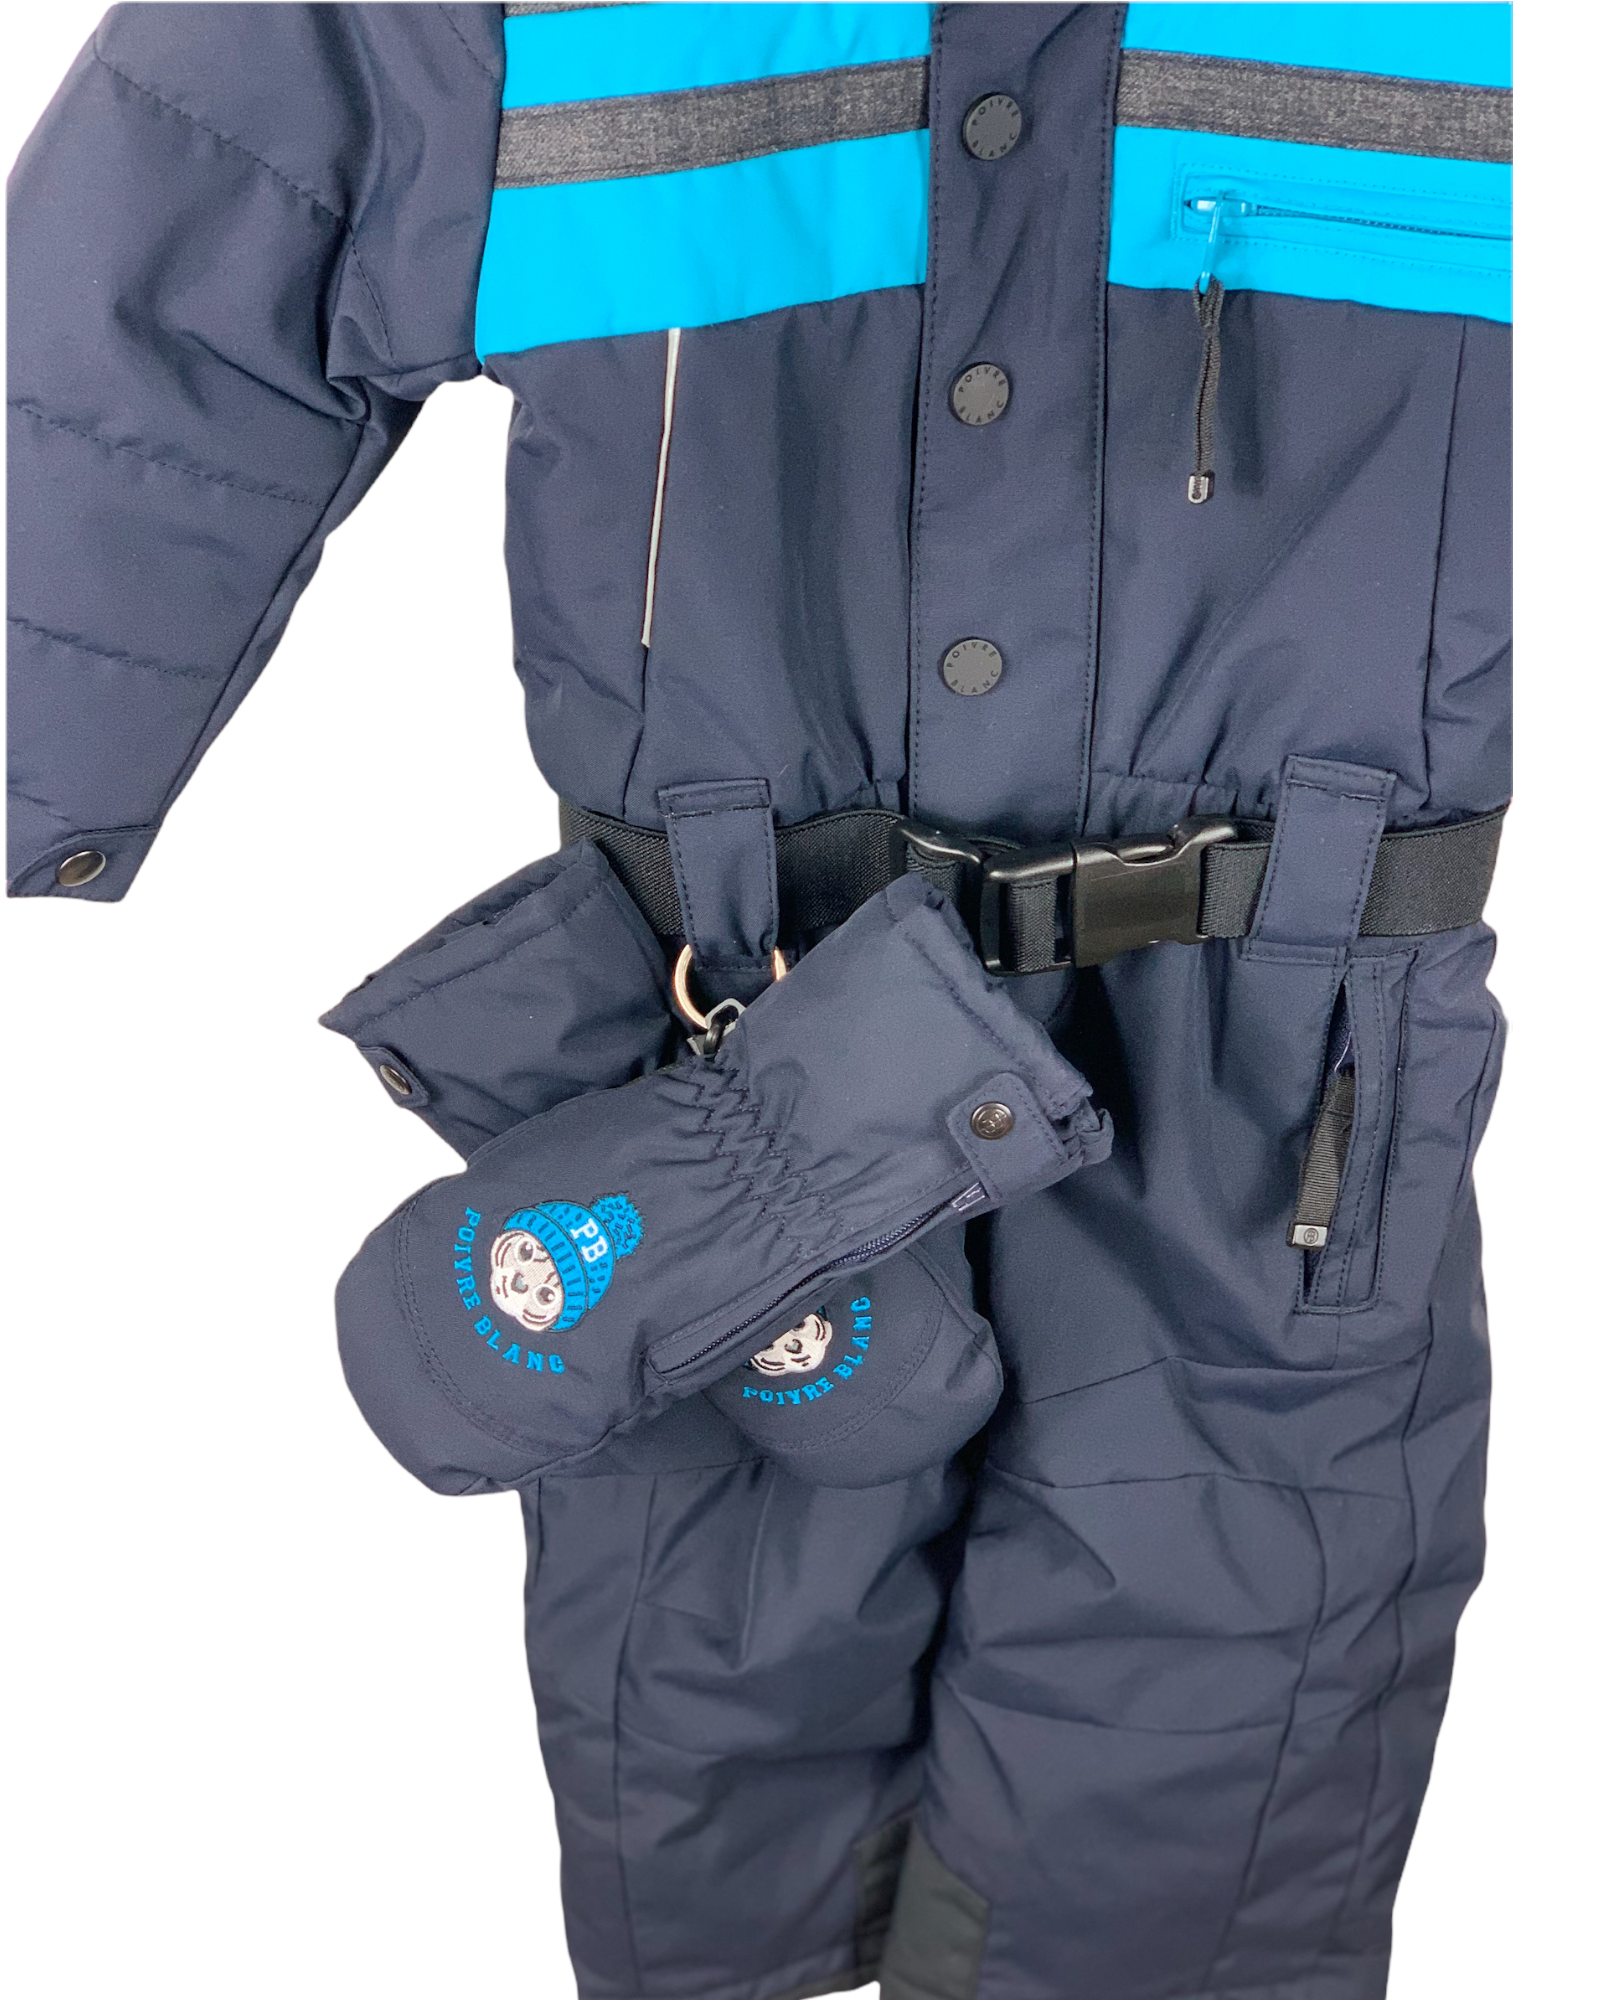 Combinaison ski Poivre Blanc 18 mois + moufles 2 ans -  Little.Clotherie.Family